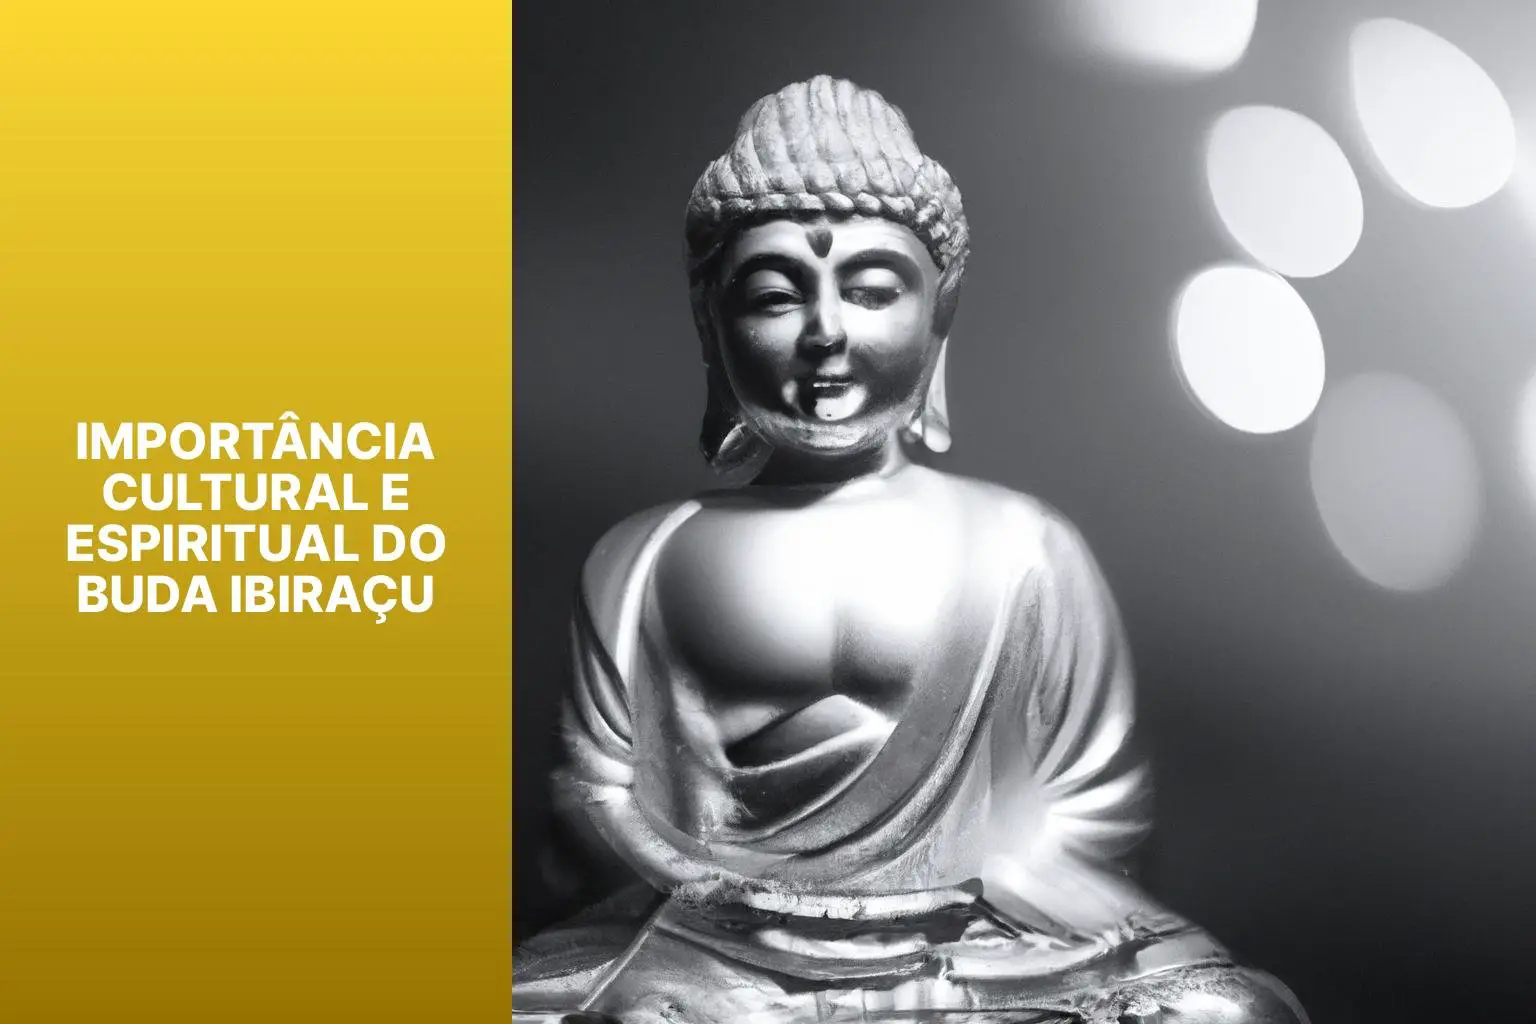 Importância Cultural e Espiritual do Buda Ibiraçu - Buda Ibiraçu 